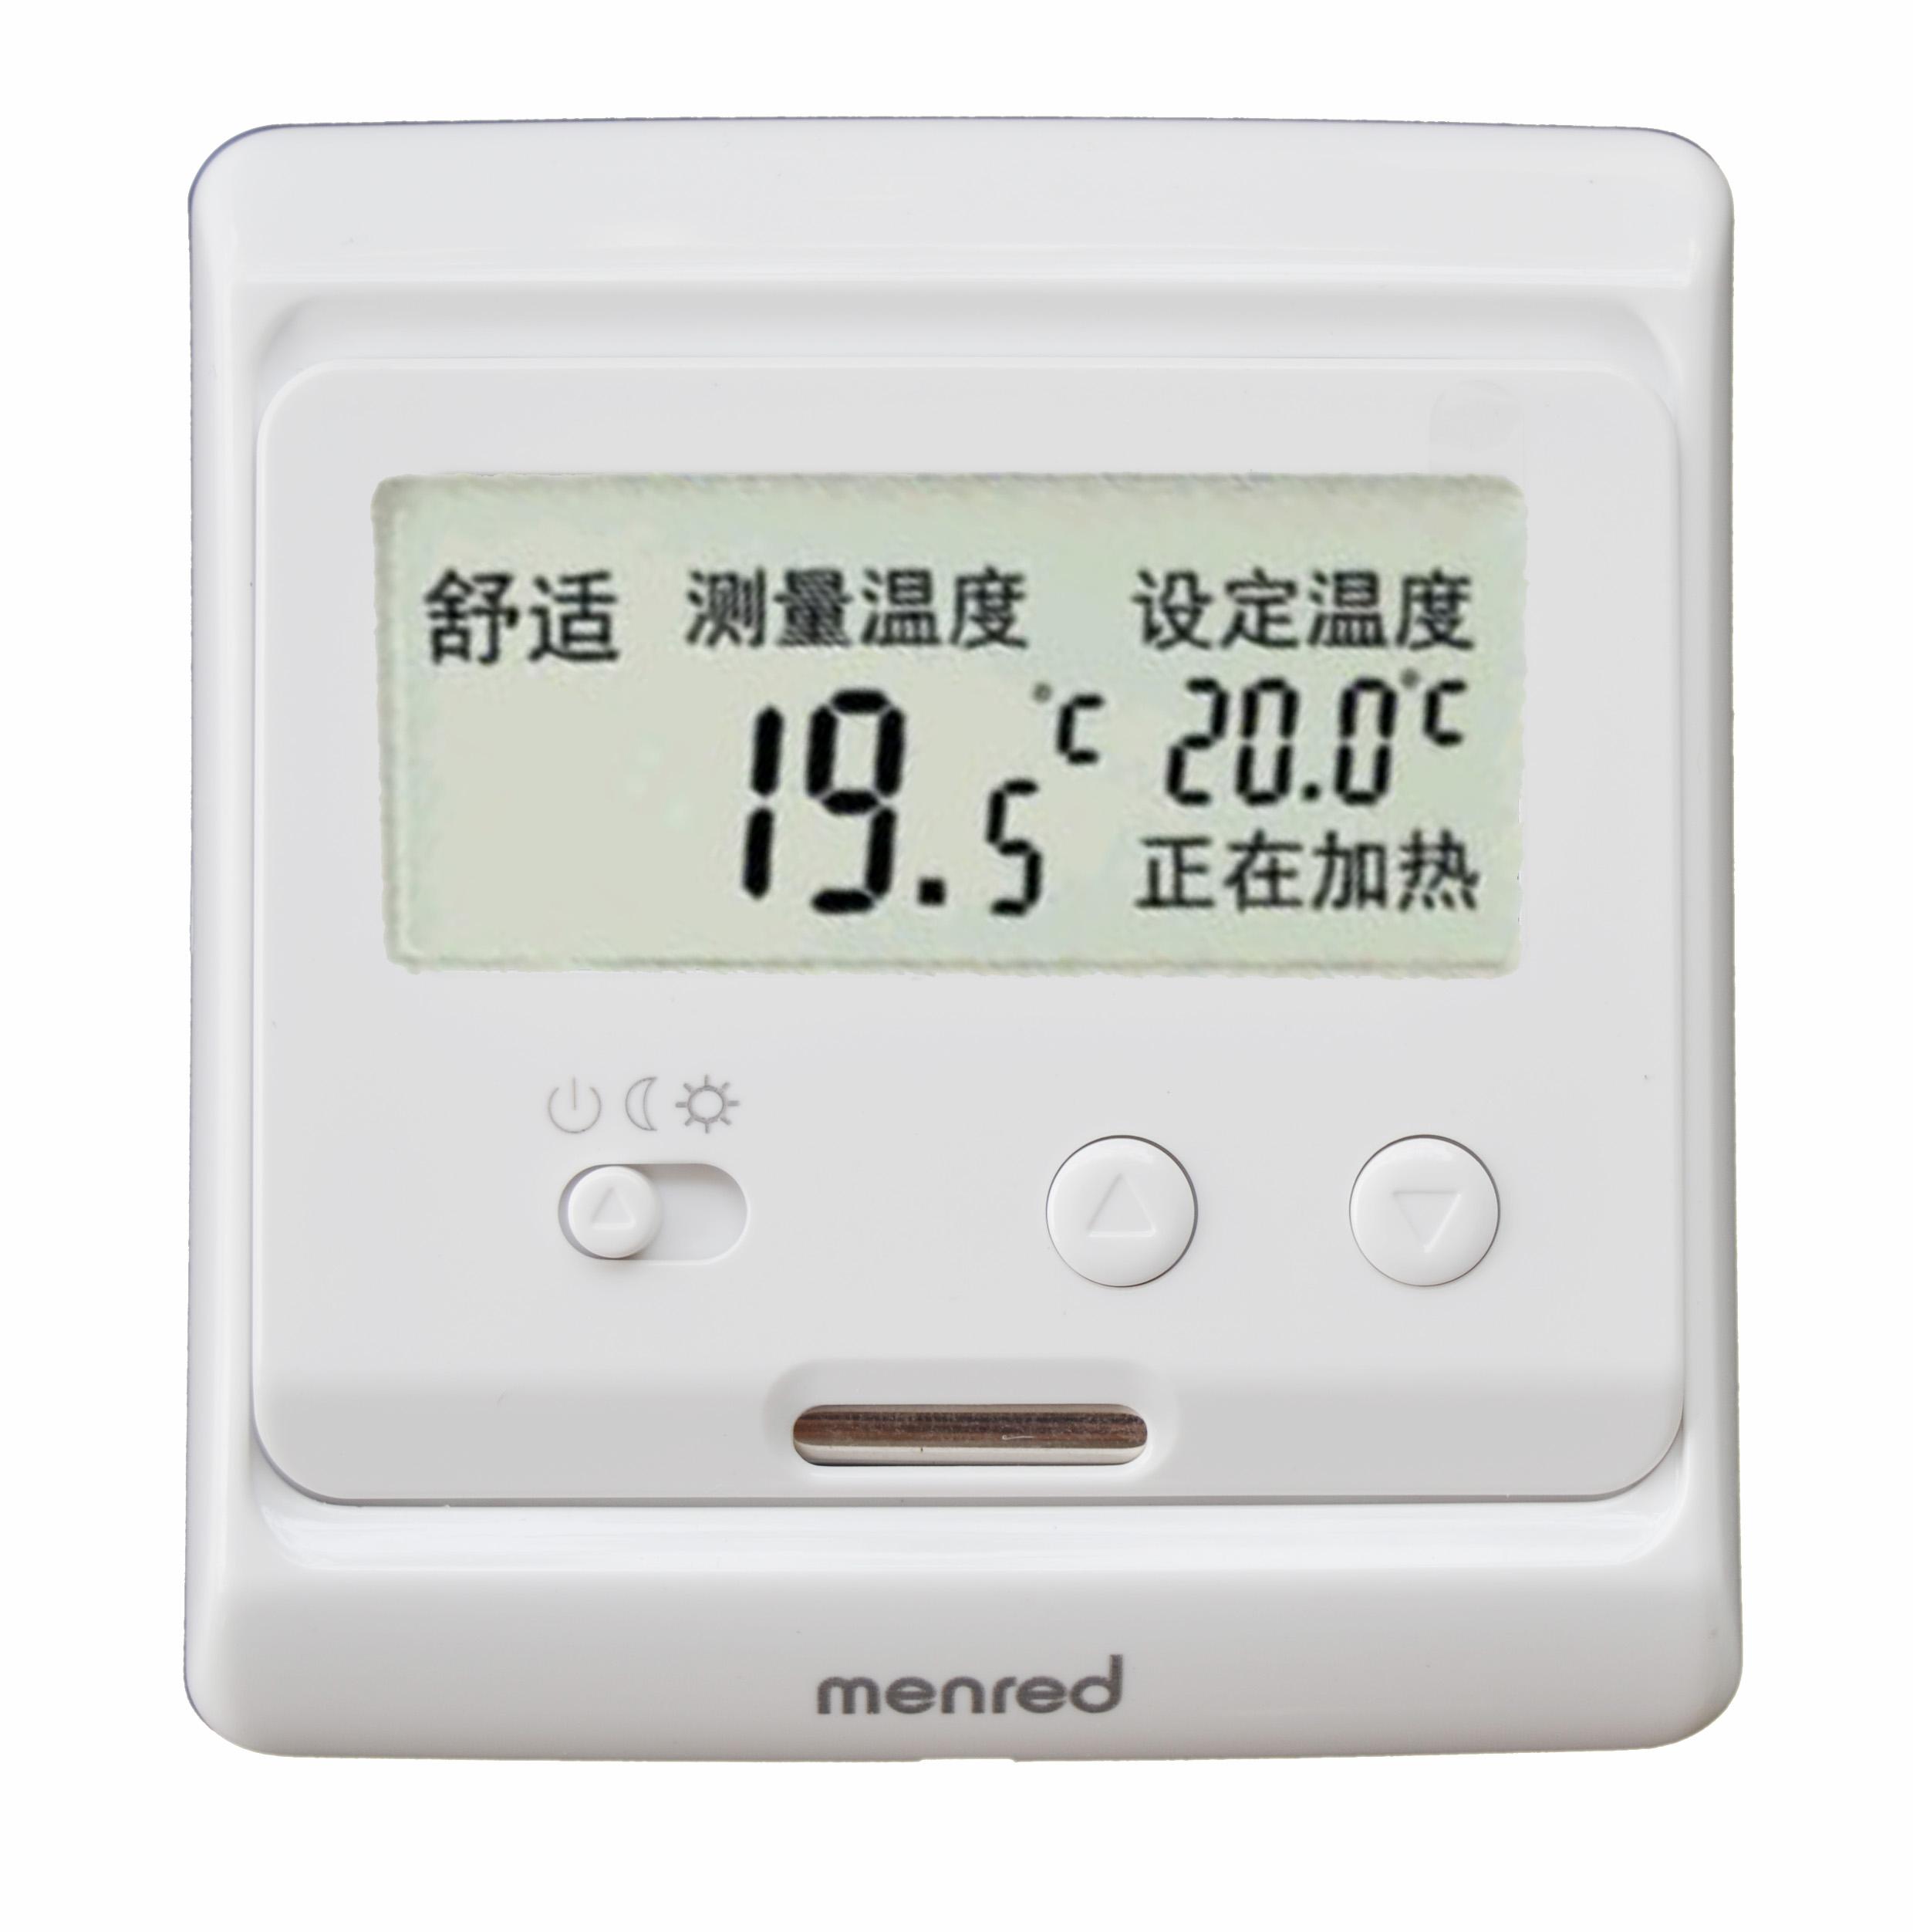 地暖温控器 汗蒸房温控器 温控器